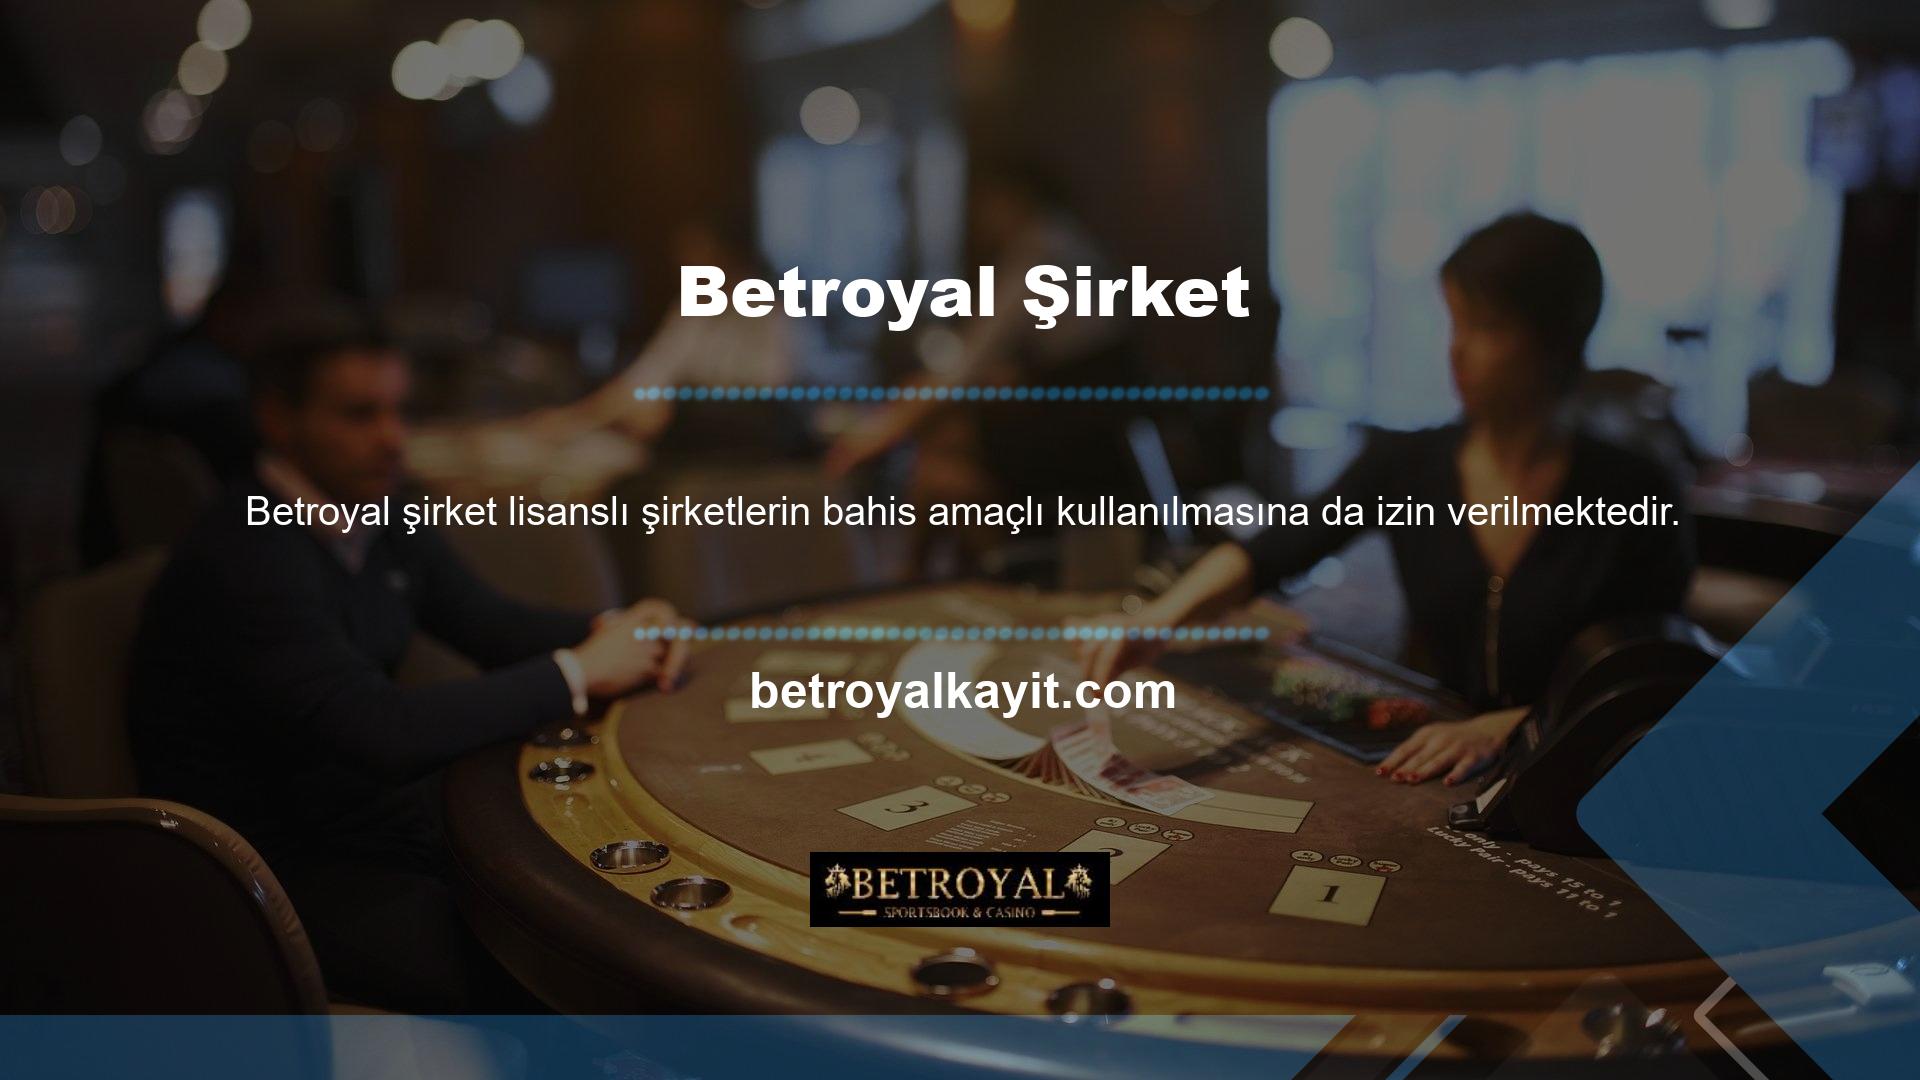 Ülkemizin casino canlı bahis sitesi Casino Betroyal birçok kullanıcı kategorisine yönelik lisanslı ve güvenilir bir hizmet sunmaktadır